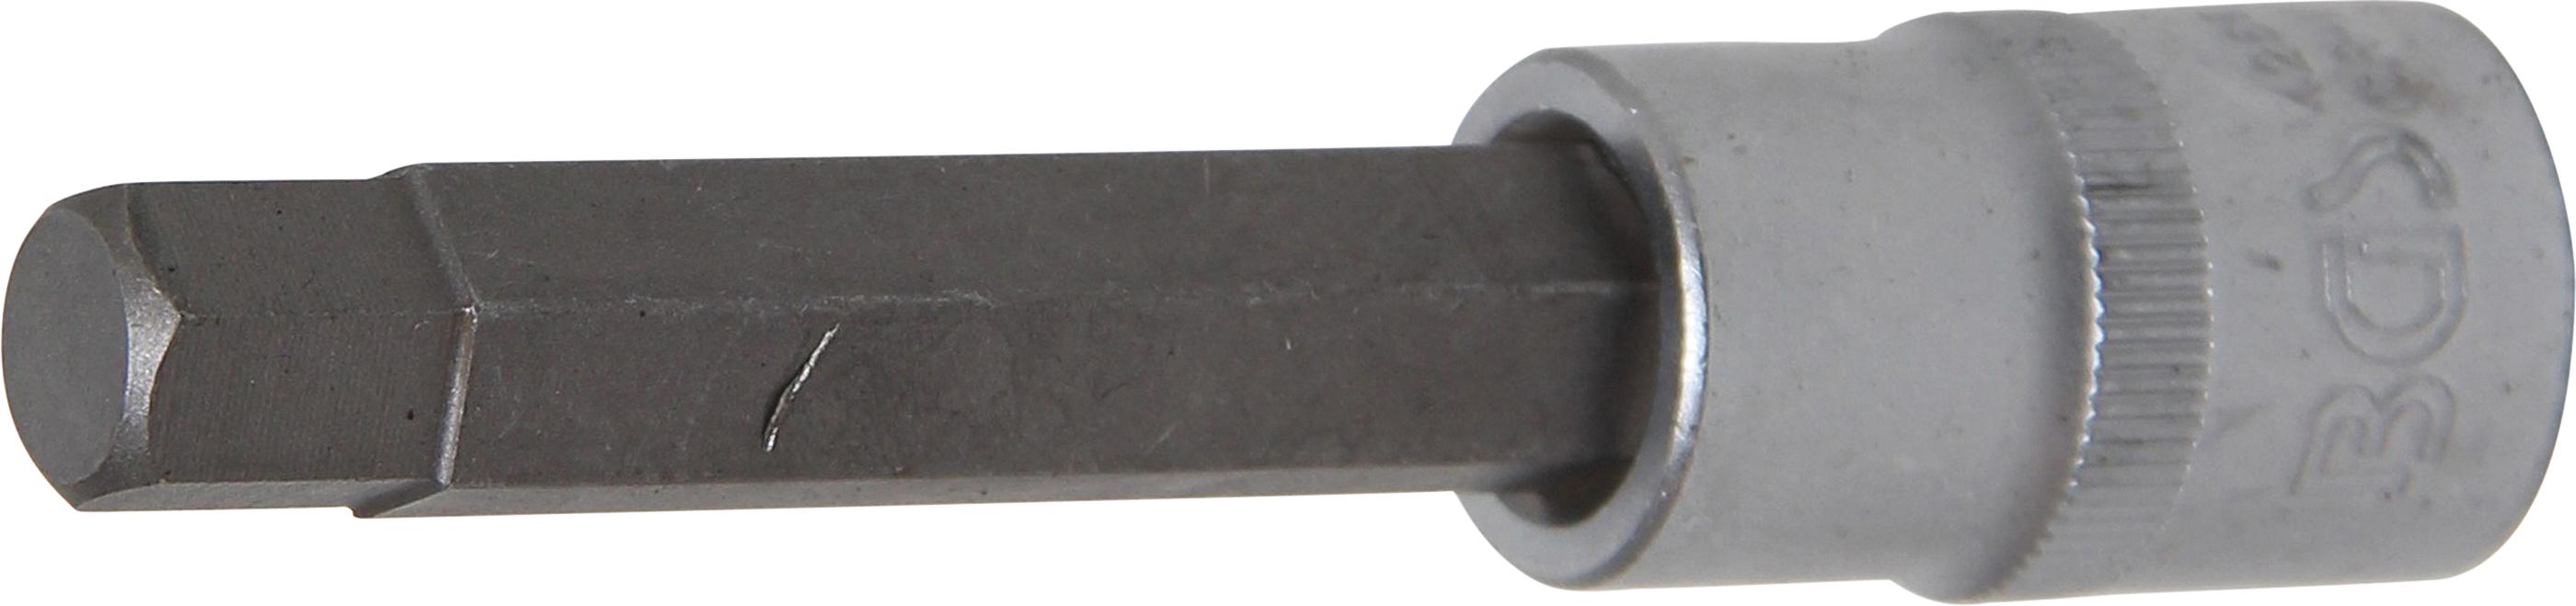 Bit Socket | length 100 mm | 12.5 mm (1/2") drive | internal Hexagon 11 mm (4266)